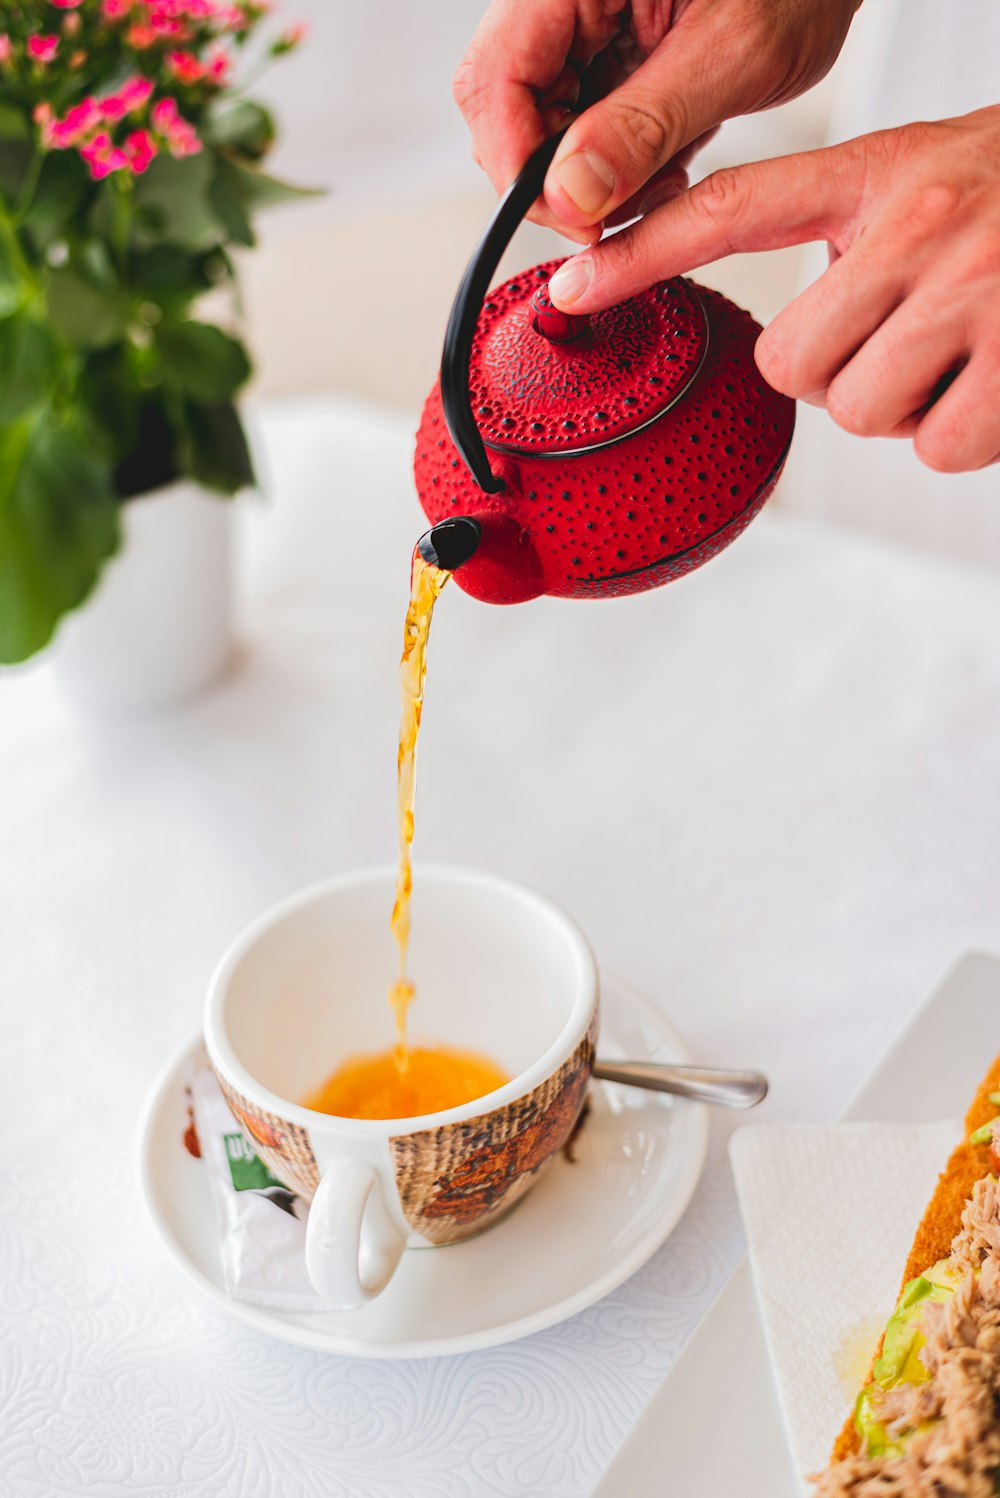 persona vertiendo líquido rojo en taza de té de cerámica blanca